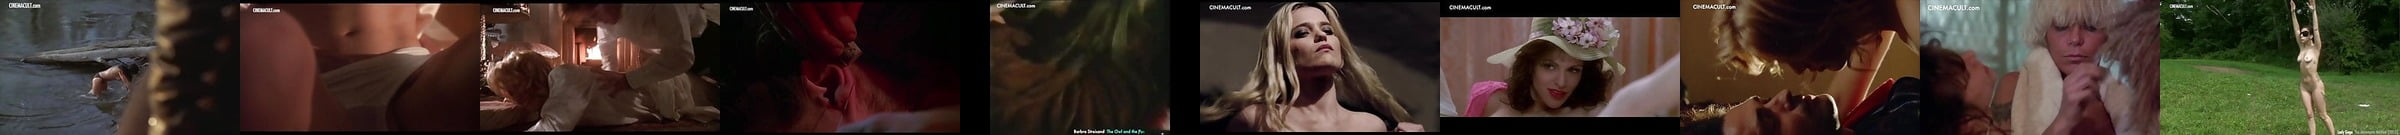 Courtney Love Desnuda Vídeos Sexuales Y Fotos Desnudas